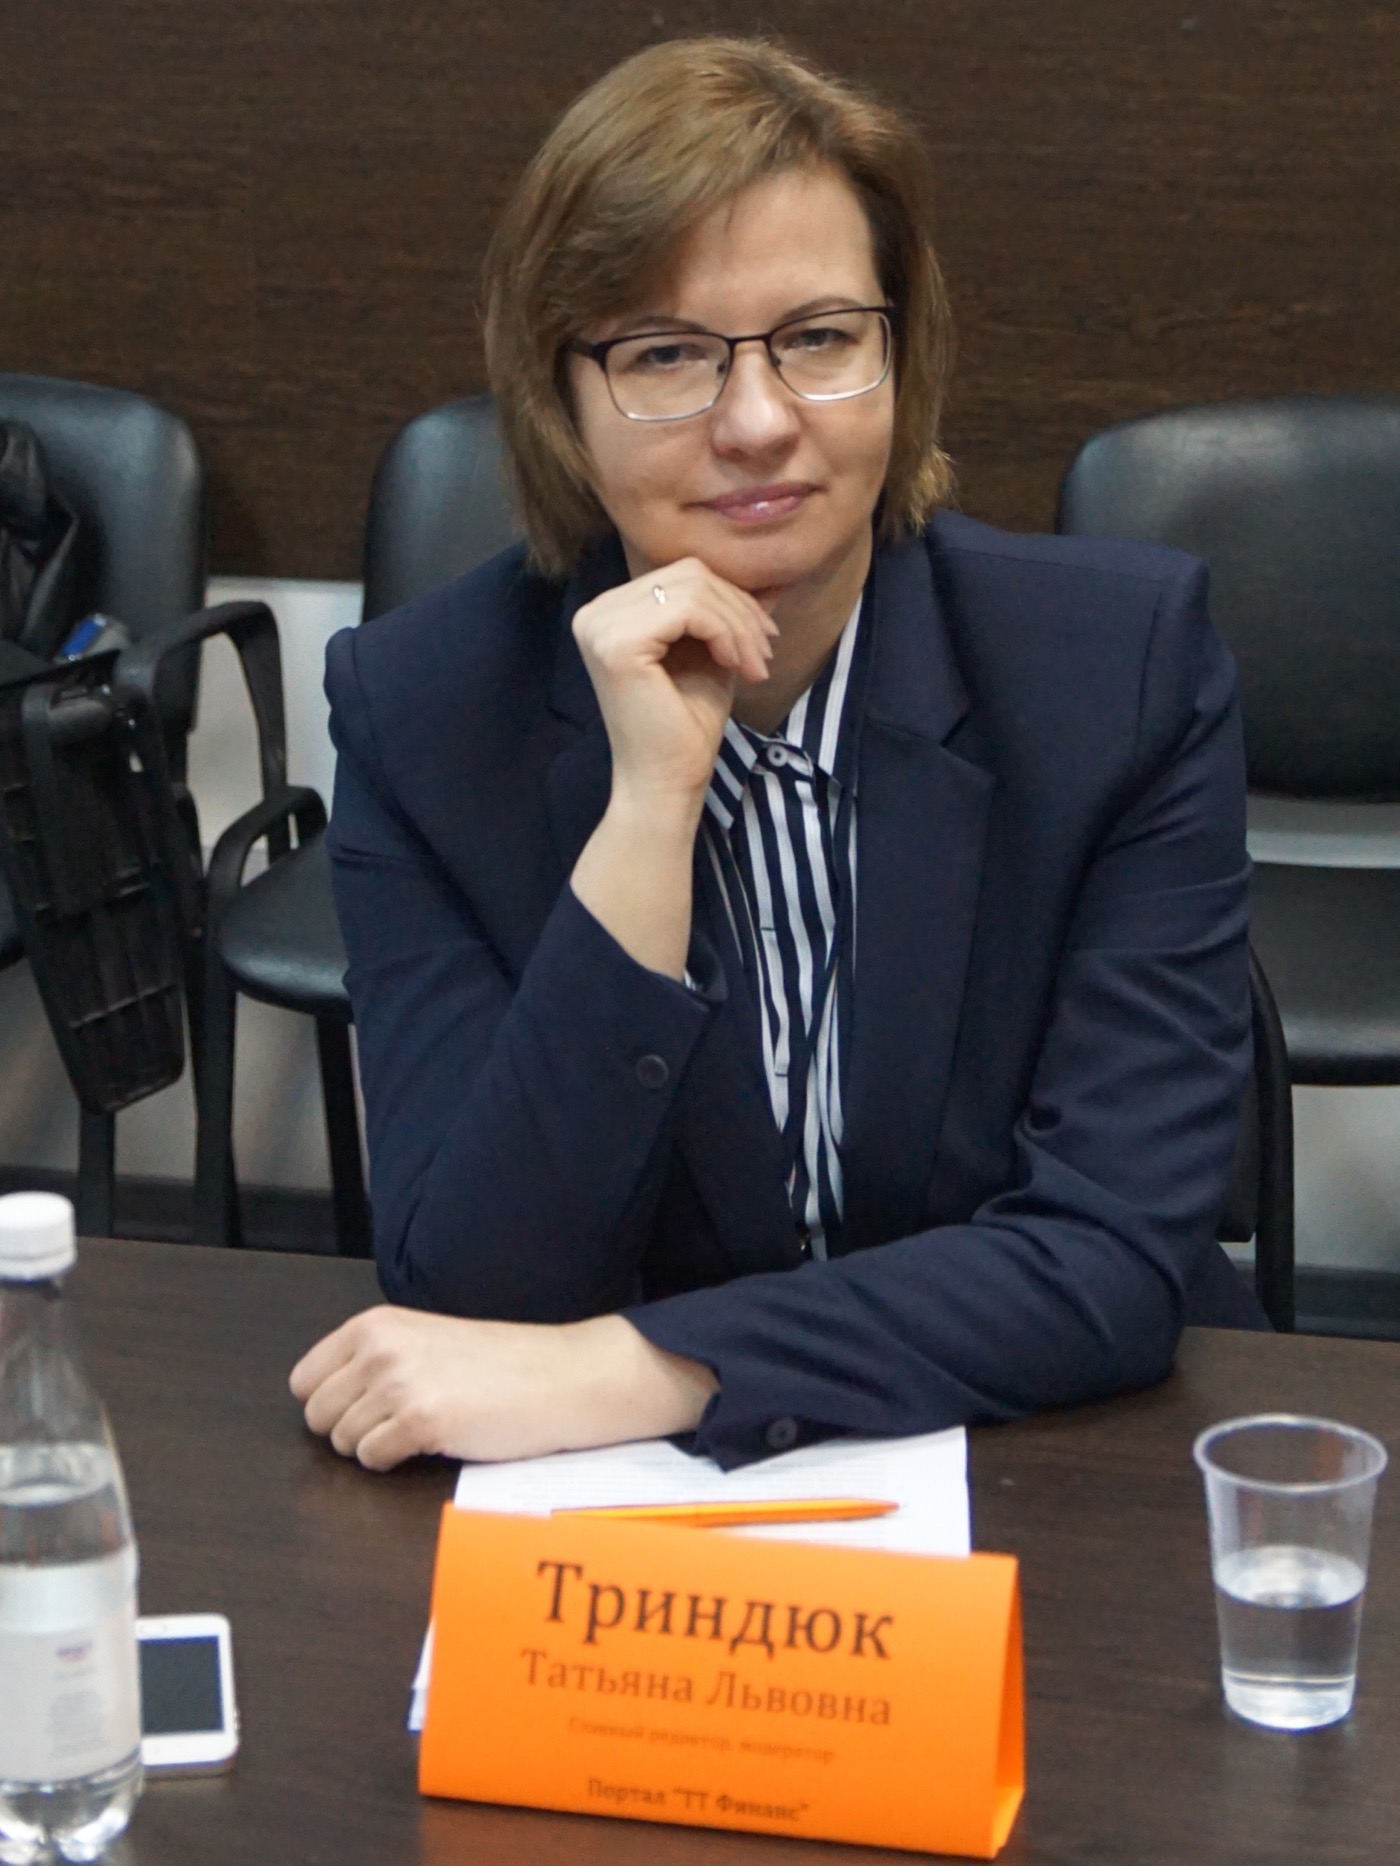 Триндюк Татьяна Львовна — главный редактор портала «ТТ Финанс» 